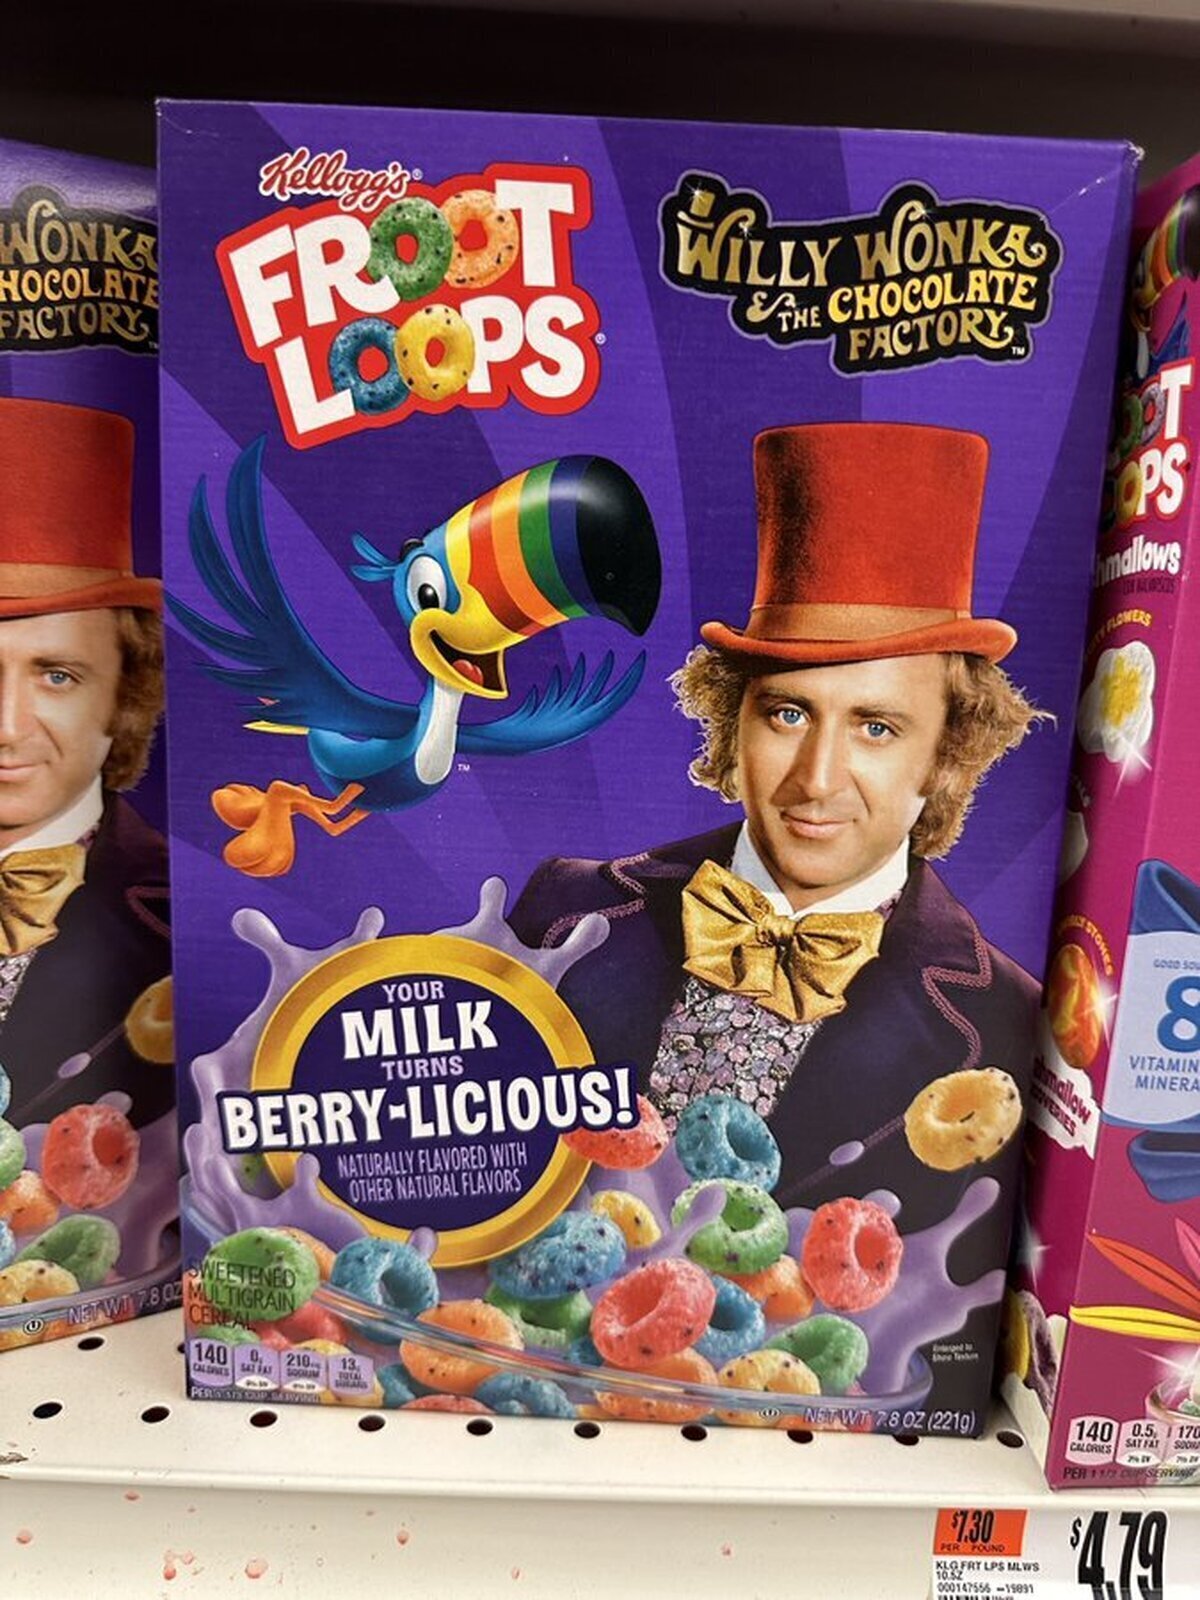 Me encanta el Froot Loops con caja del Willy Wonka clásico